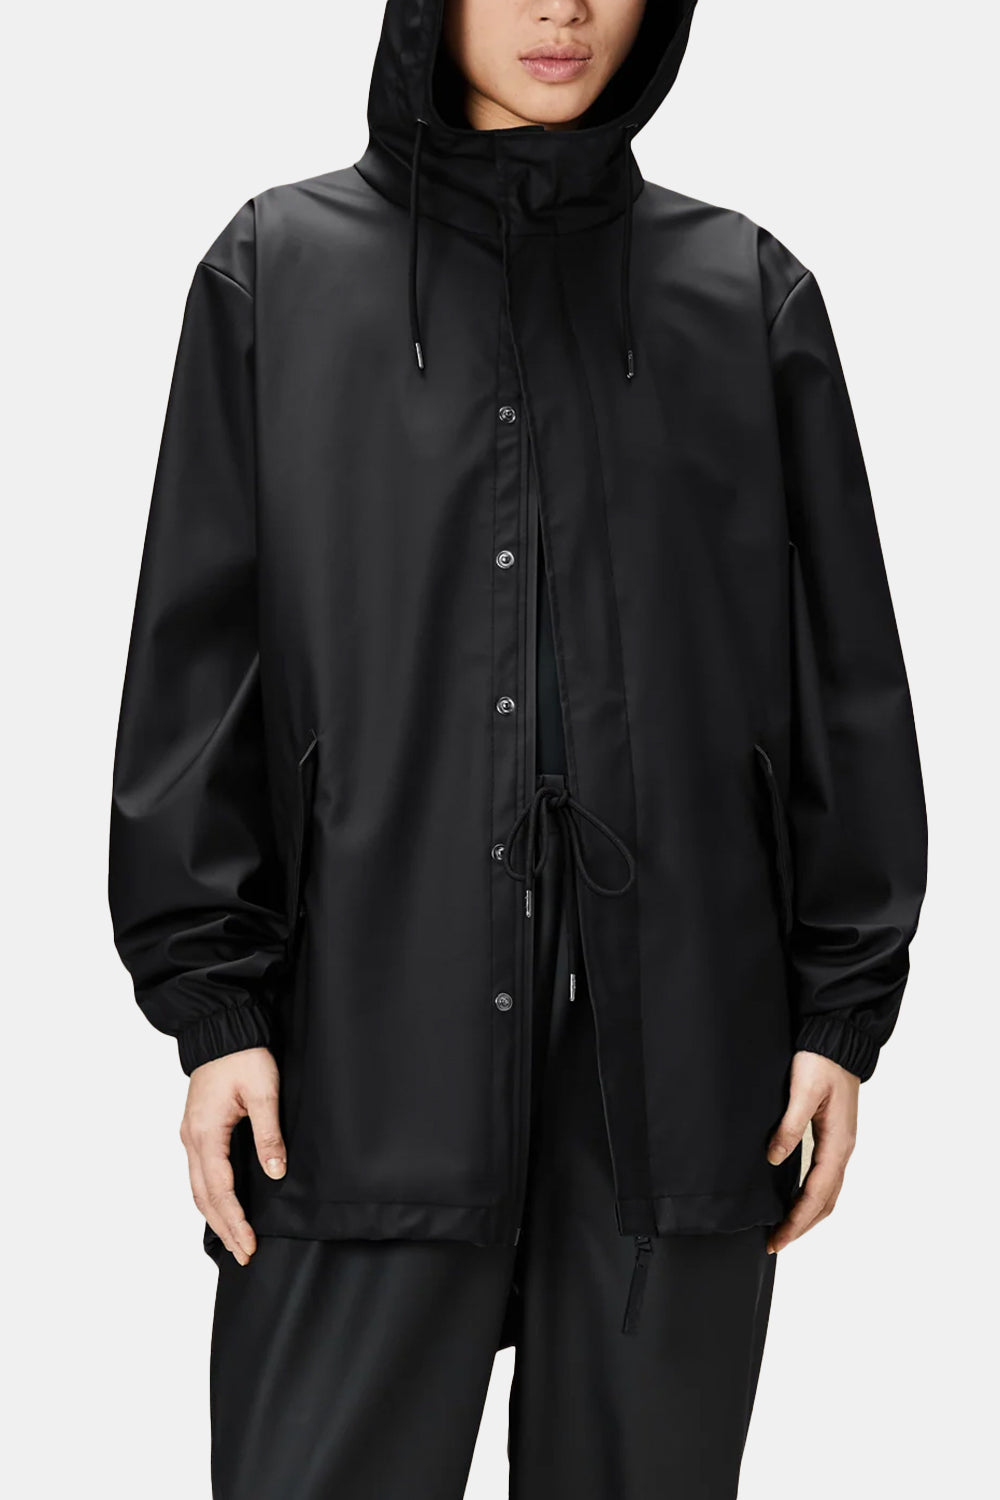 Rains Fishtail Jacket (Black)